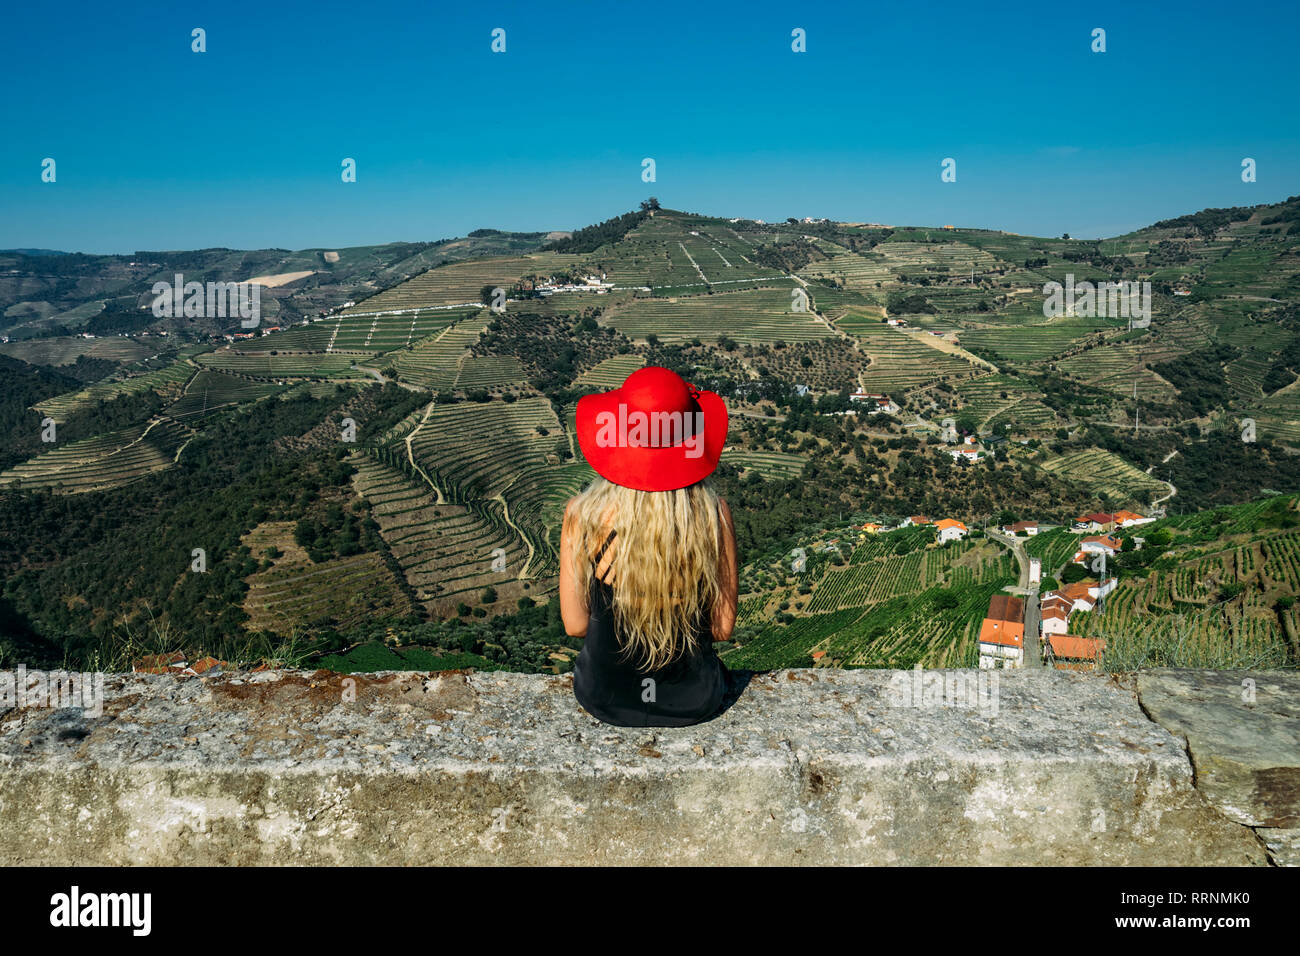 Woman in red hat appréciant ensoleillée, vaste paysage vallonné, vue sur le Portugal Banque D'Images